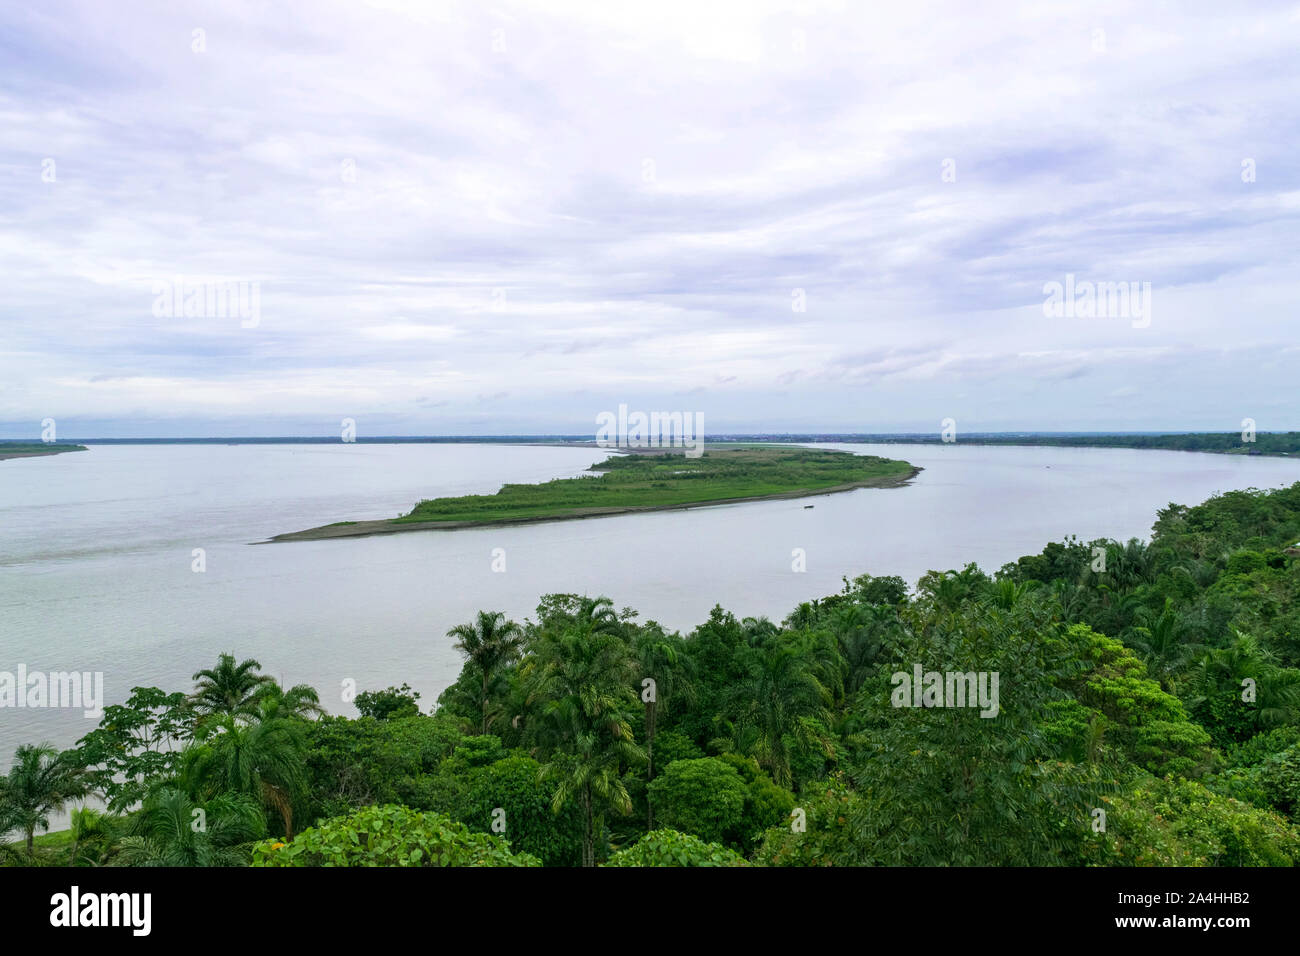 Il Perù, Amazzonia peruviana paesaggio. Le foto presenti riflessioni del Rio delle Amazzoni, Iquitos - Perù Foto Stock